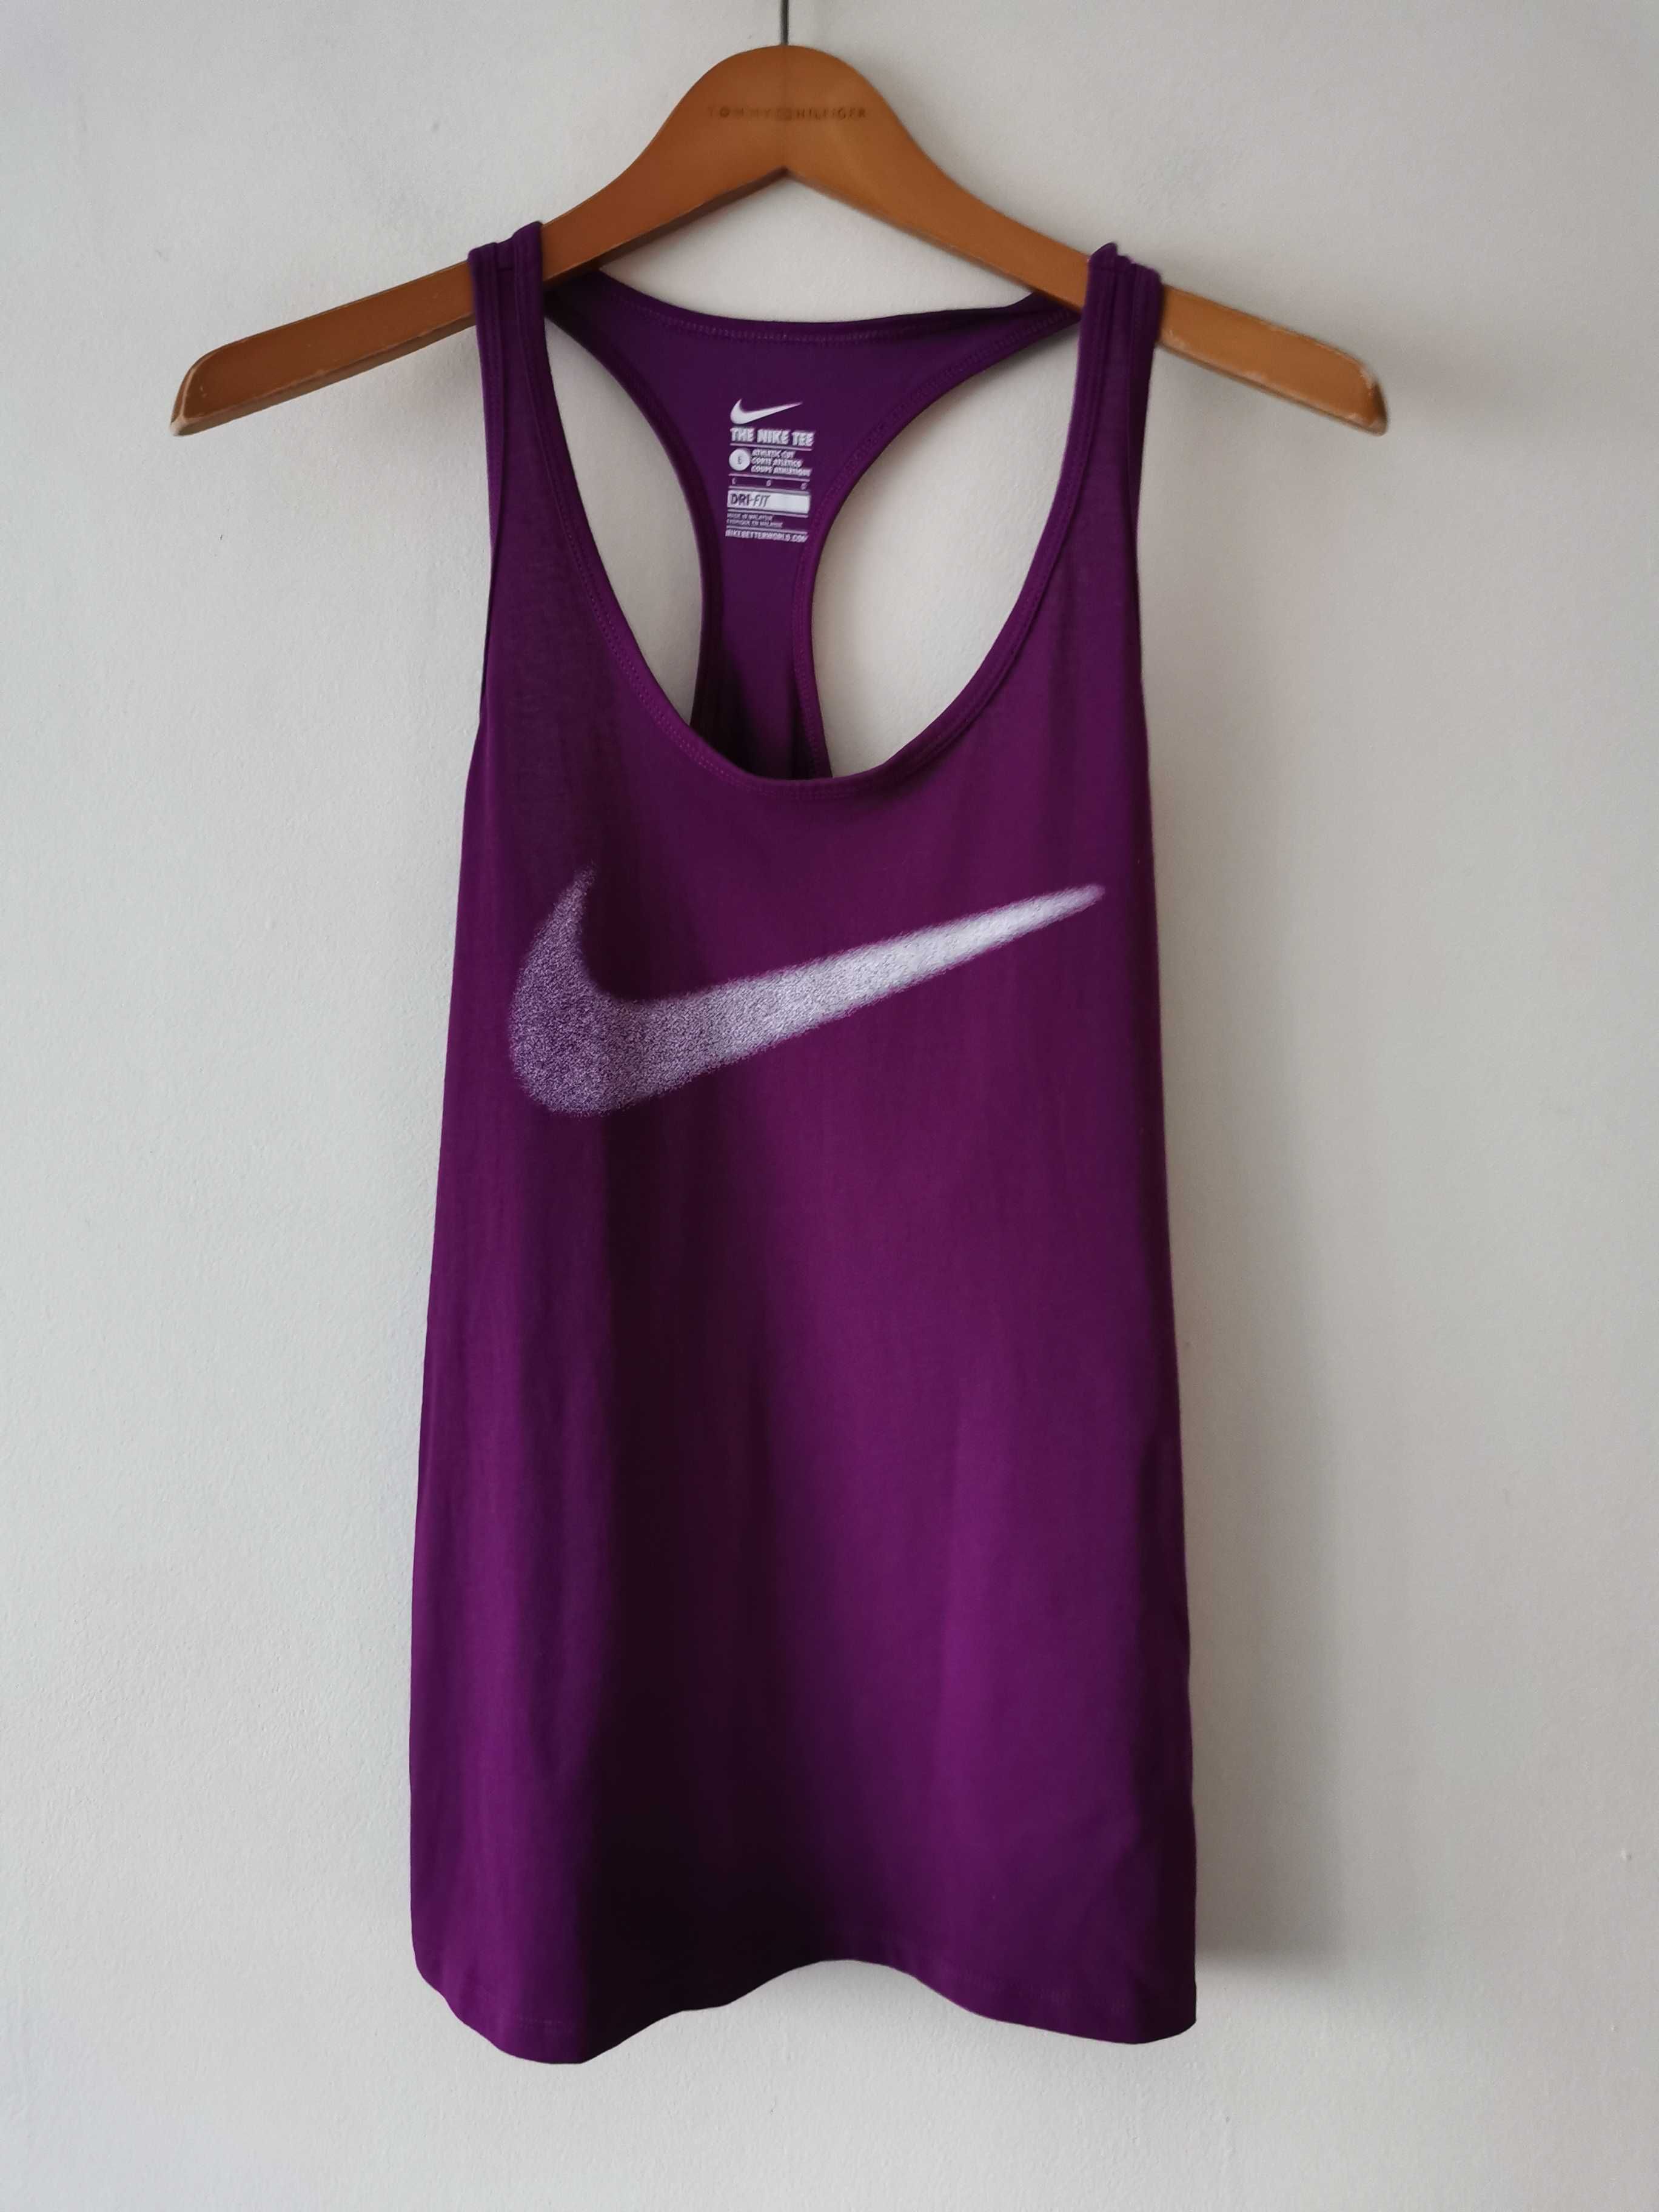 Nike koszulka bluzka na ramiączkach sportowa logowana damska L/XL